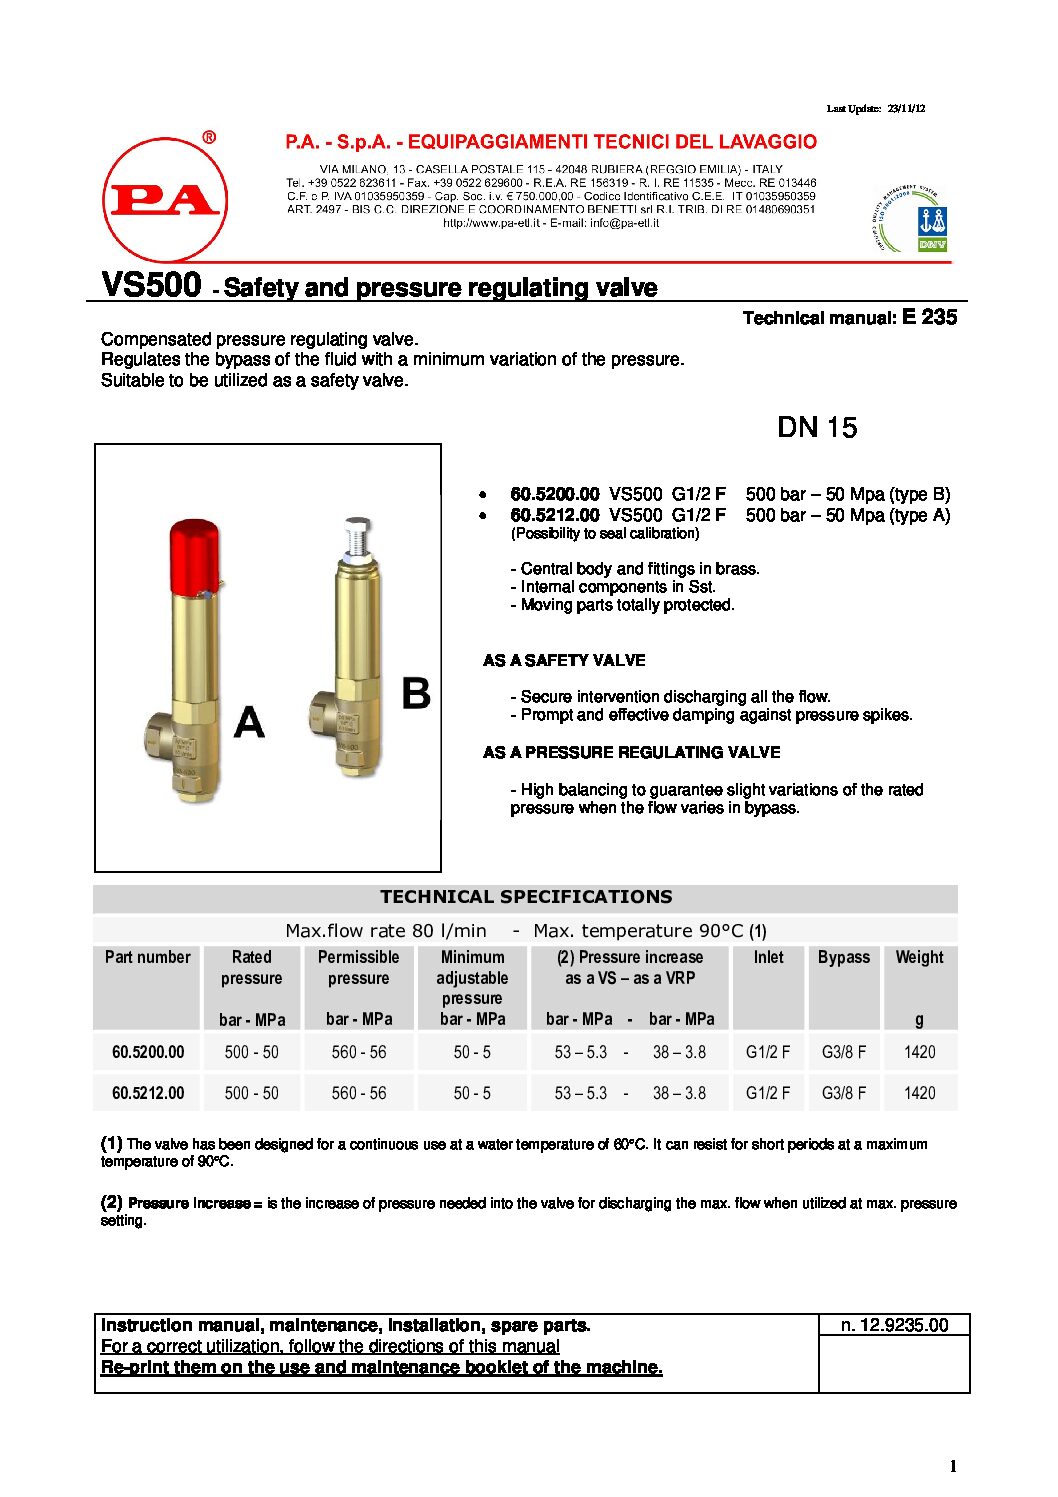 PA VS500 safety valve technical manual